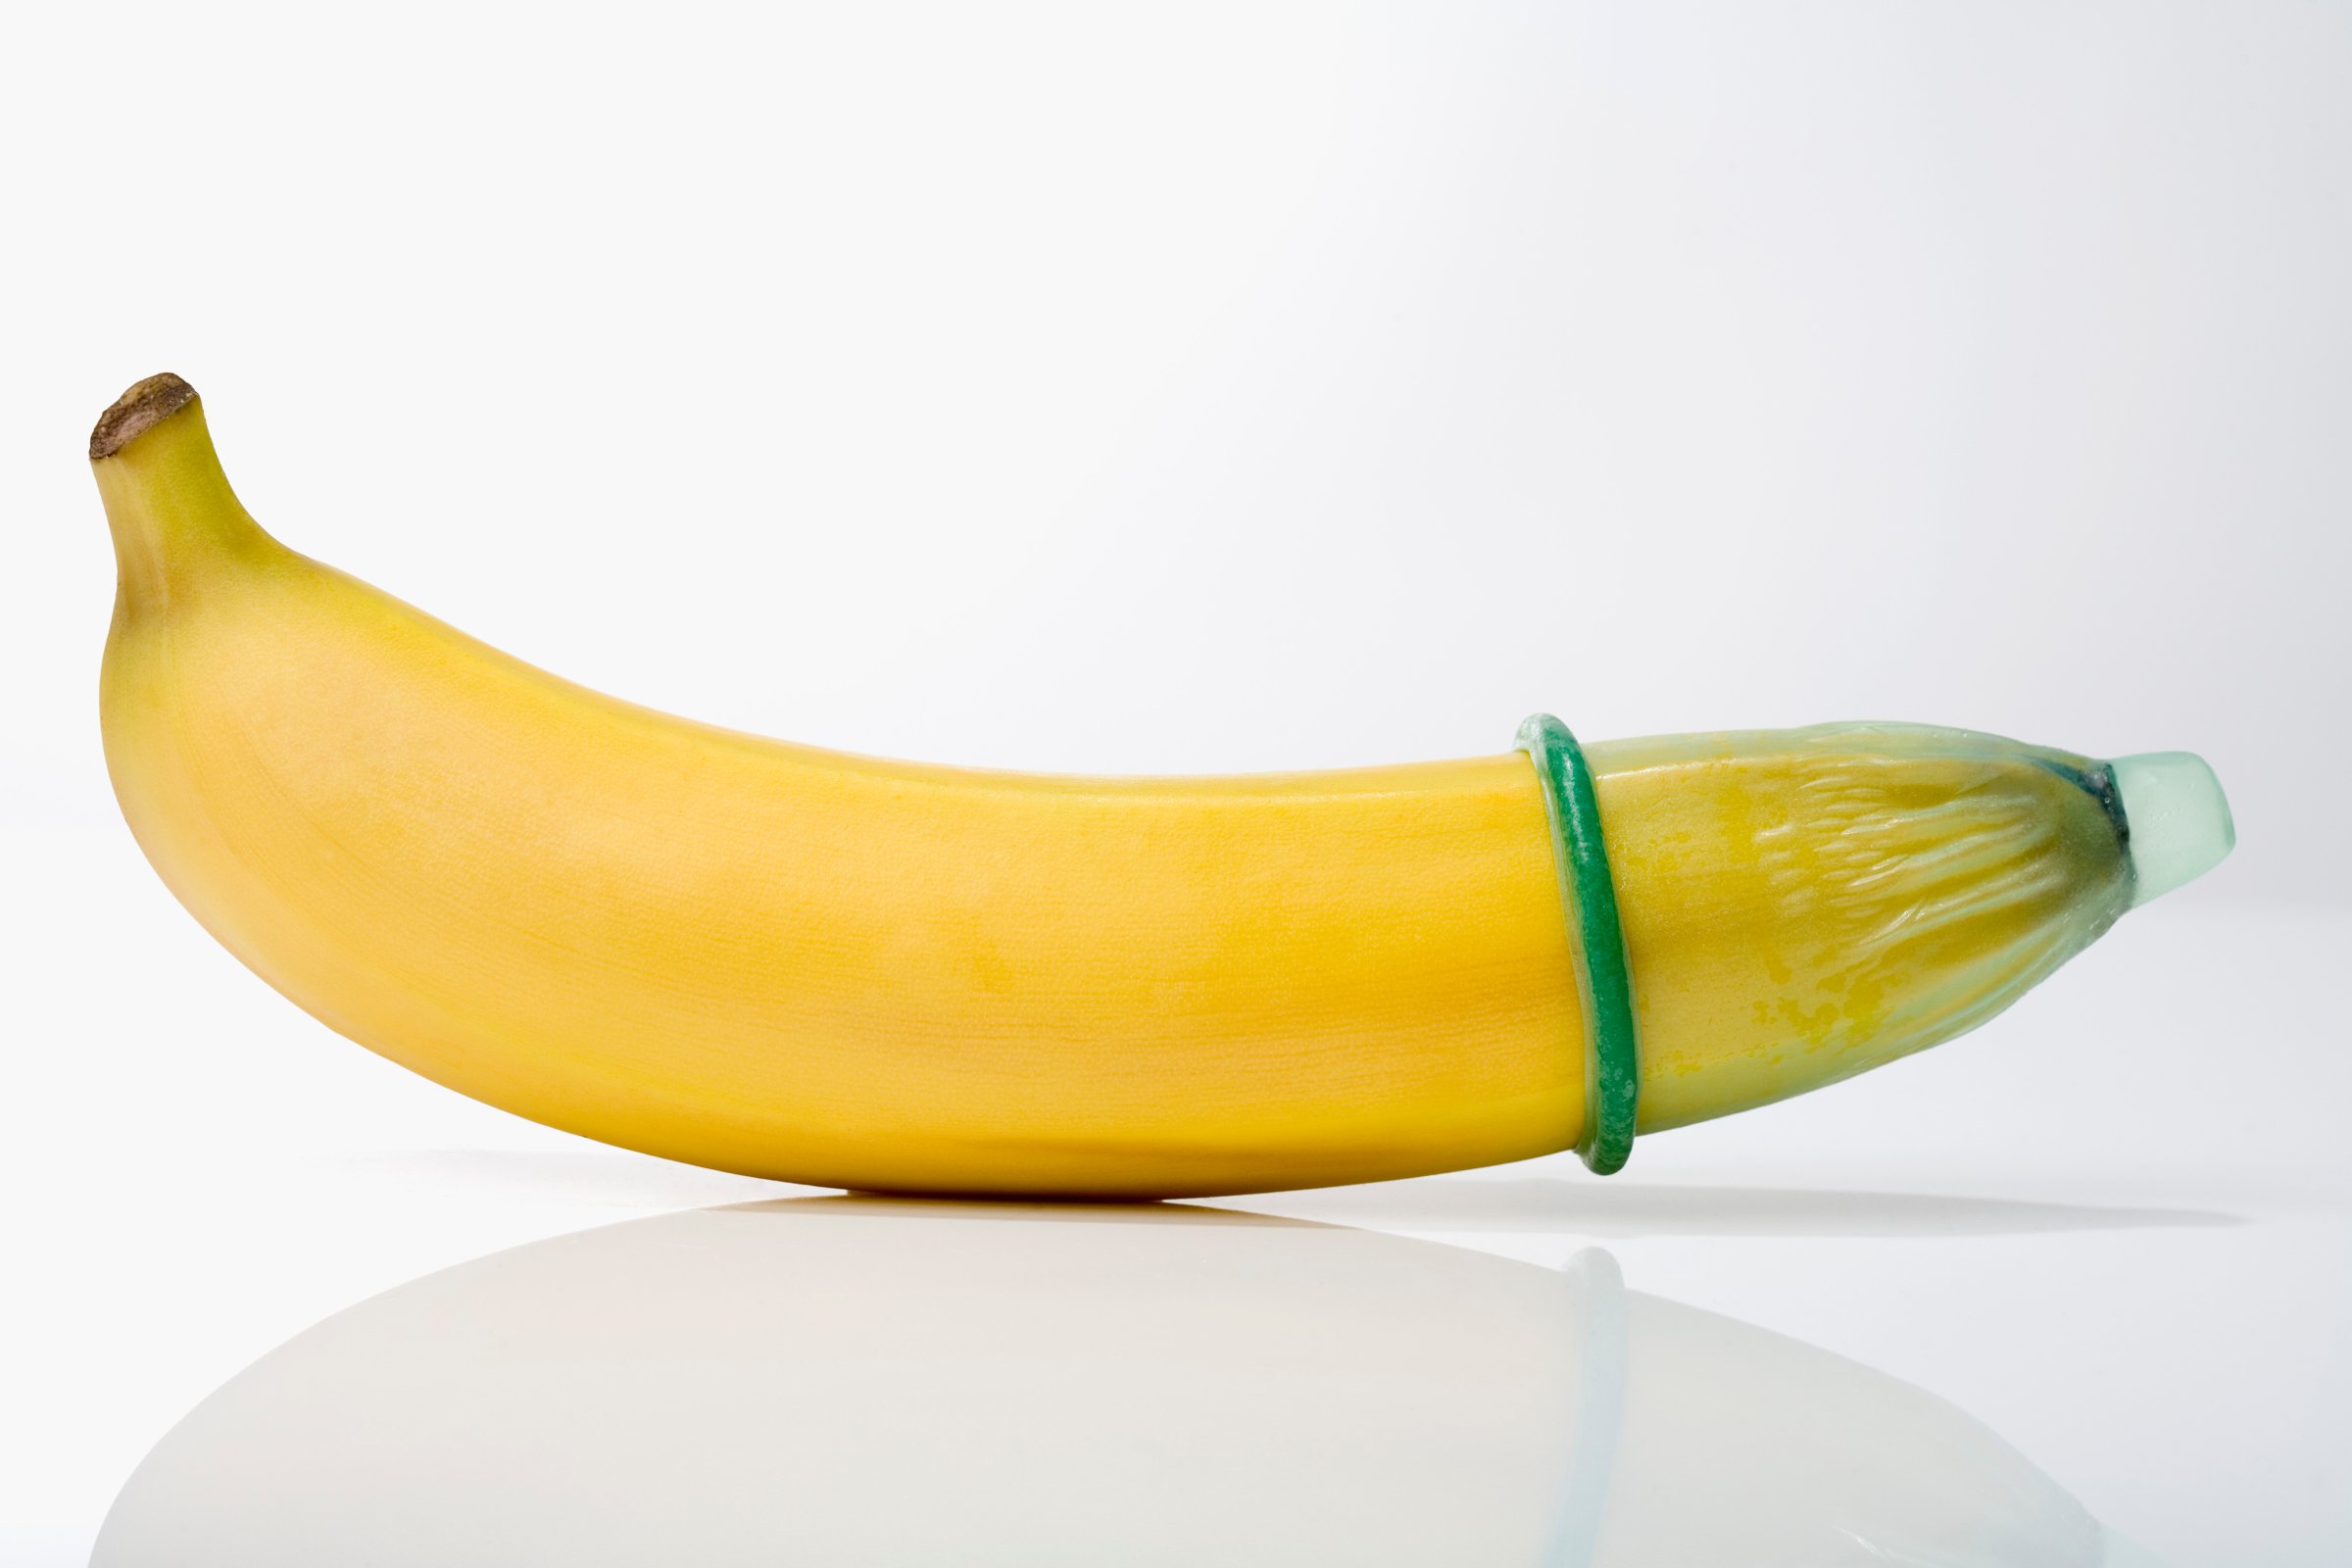 "Condom on banana, close-up"